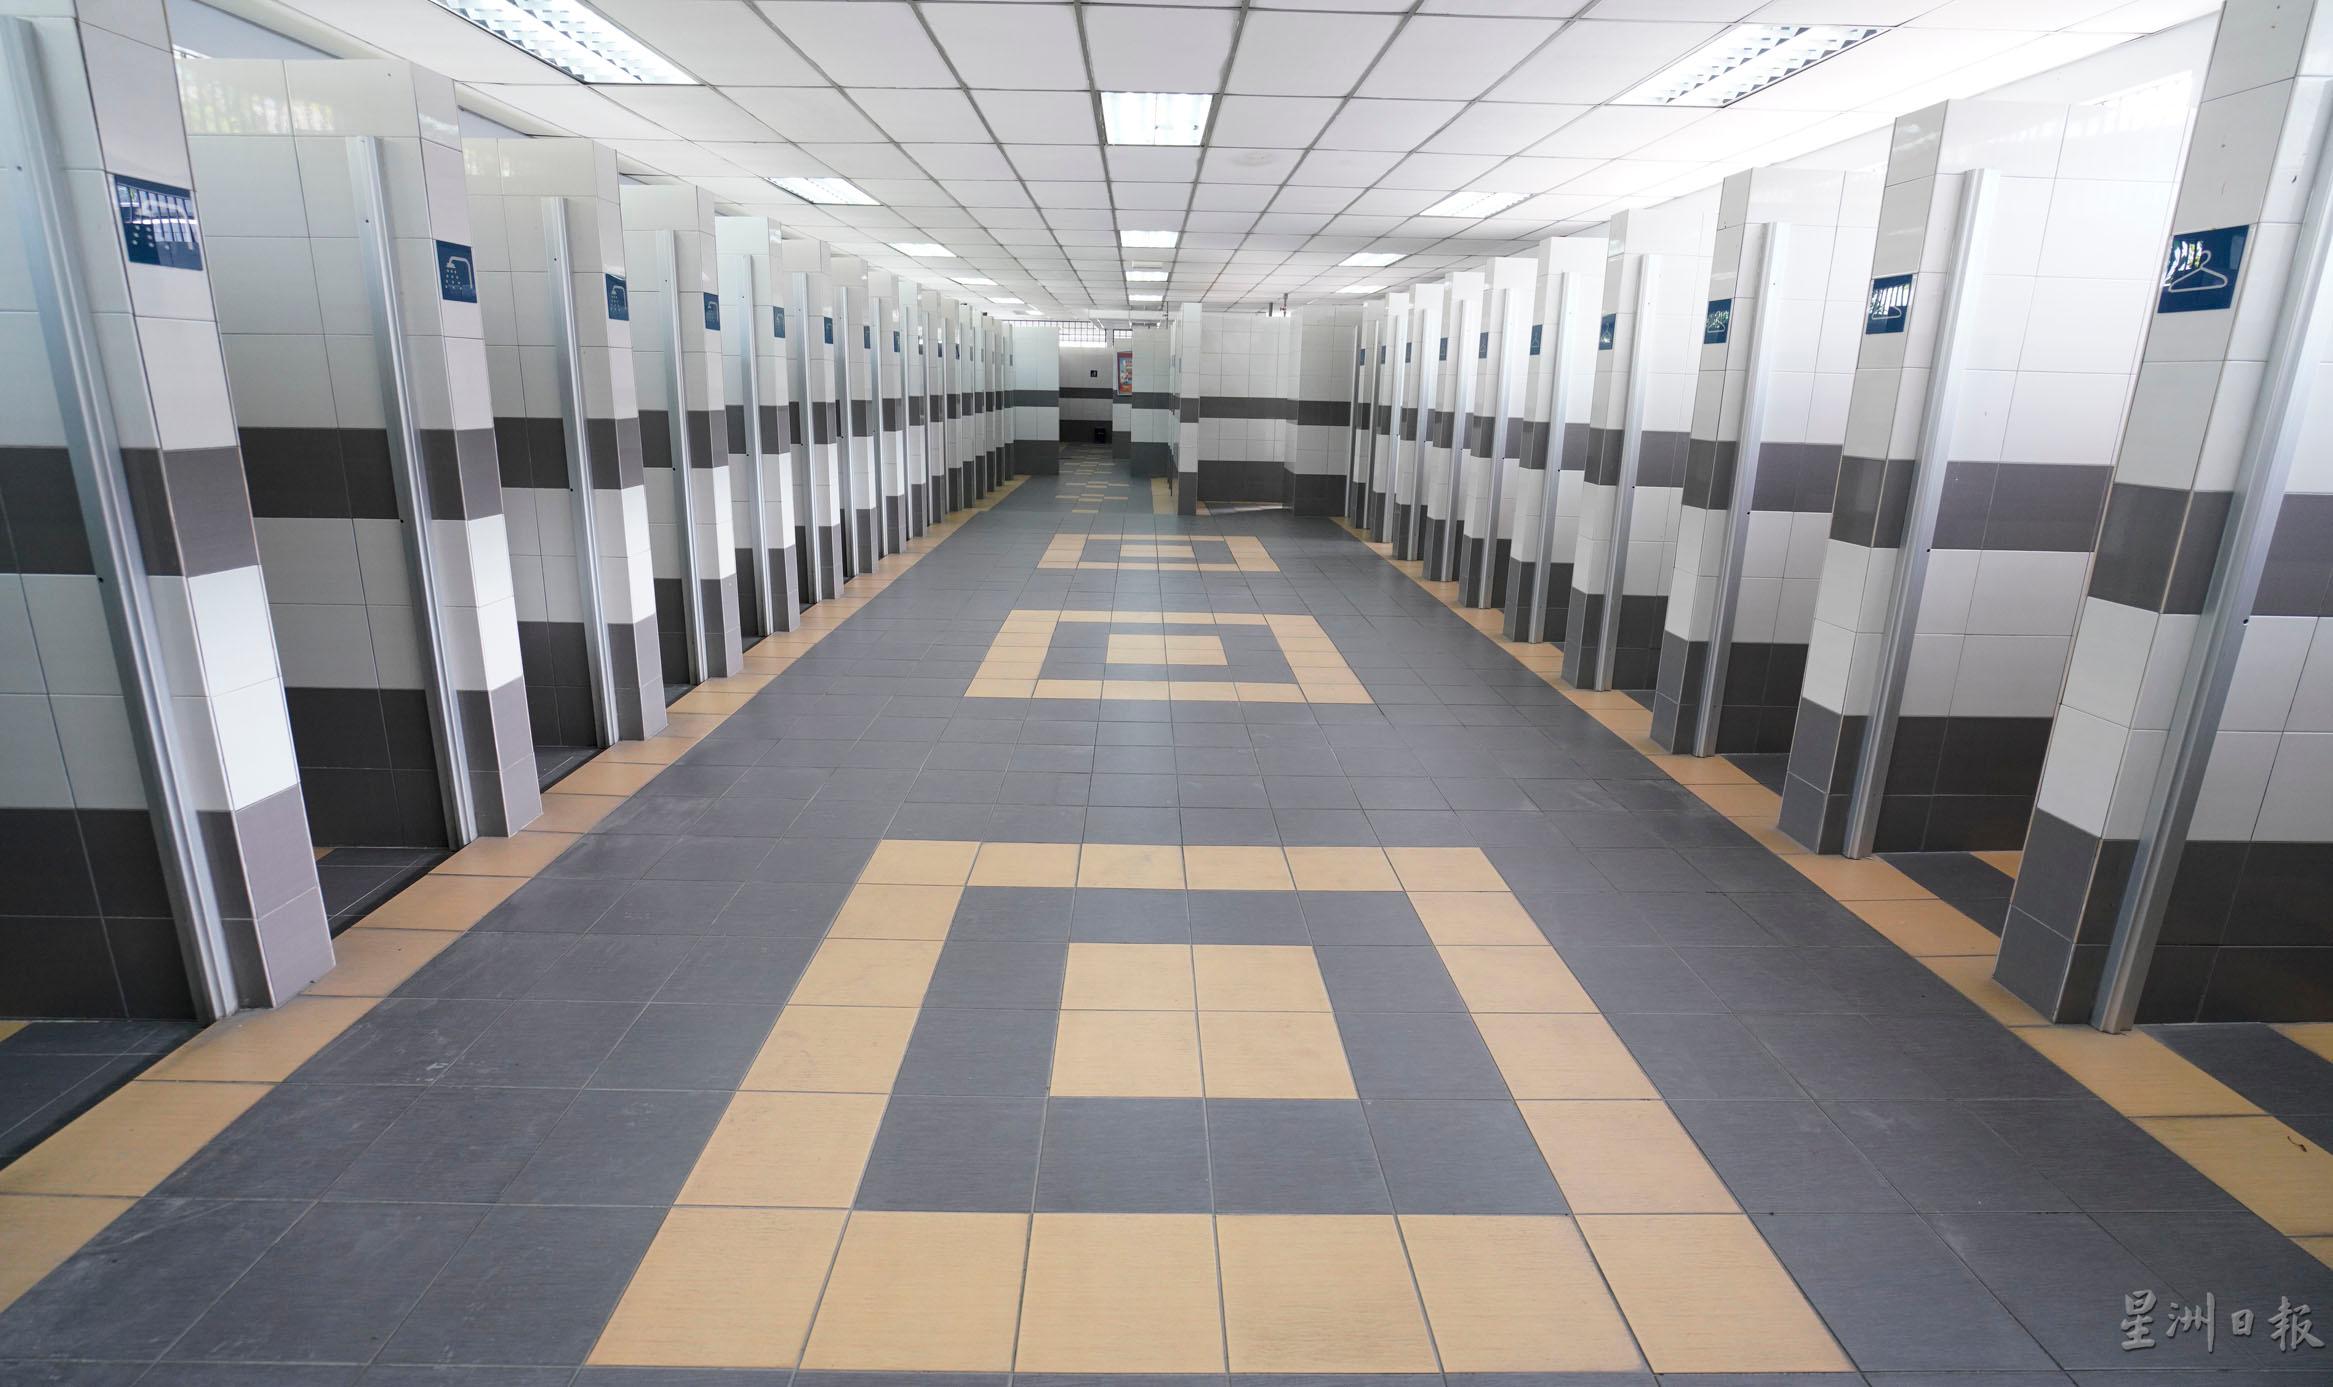 当局也限制进入淋浴室和厕所的人数，以避免空间拥挤。